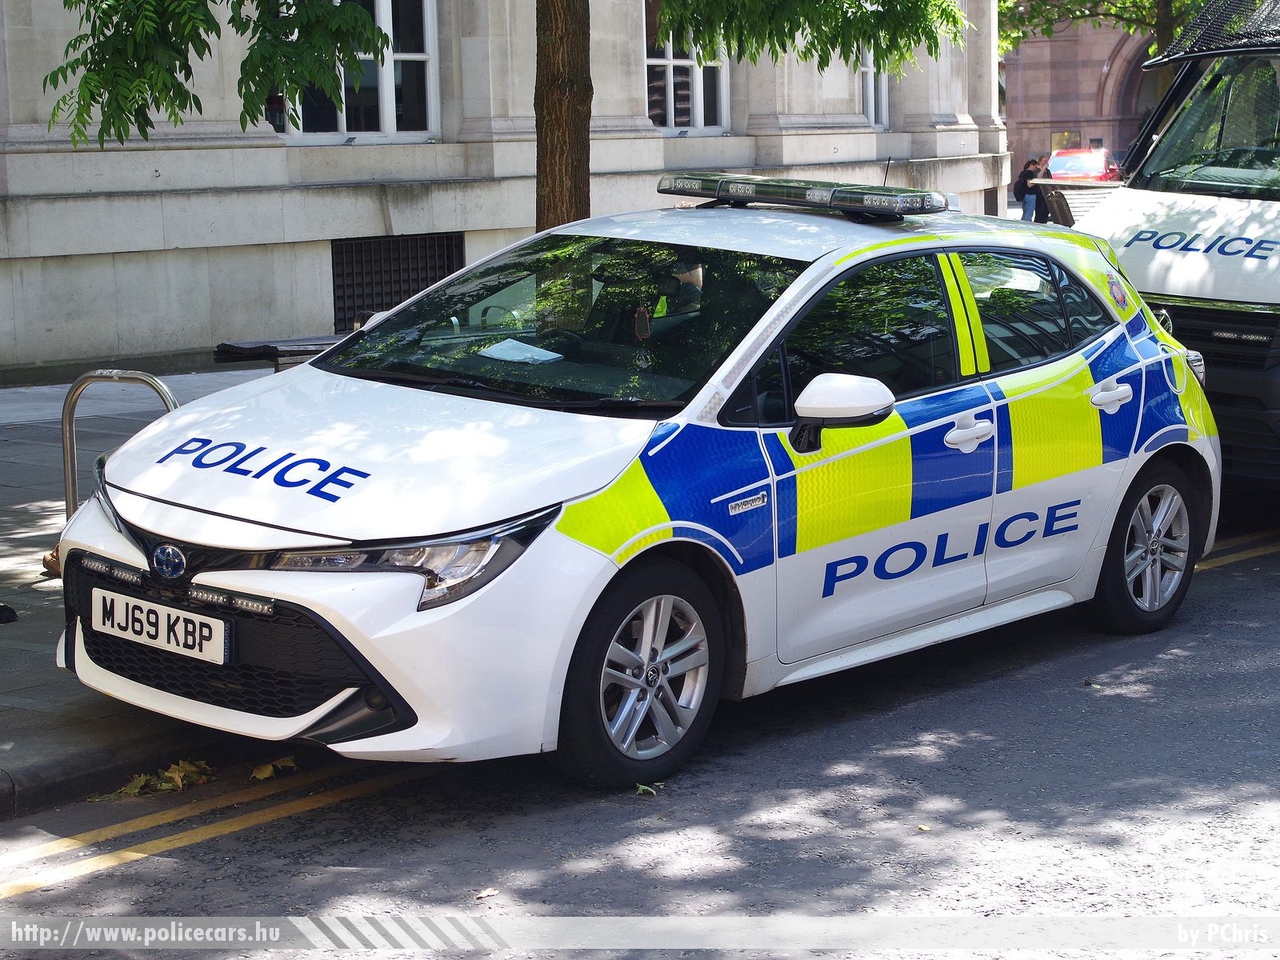 Toyota Corolla, fotó: PChris
Keywords: angol Anglia rendőr rendőrautó rendőrség english England police policecar